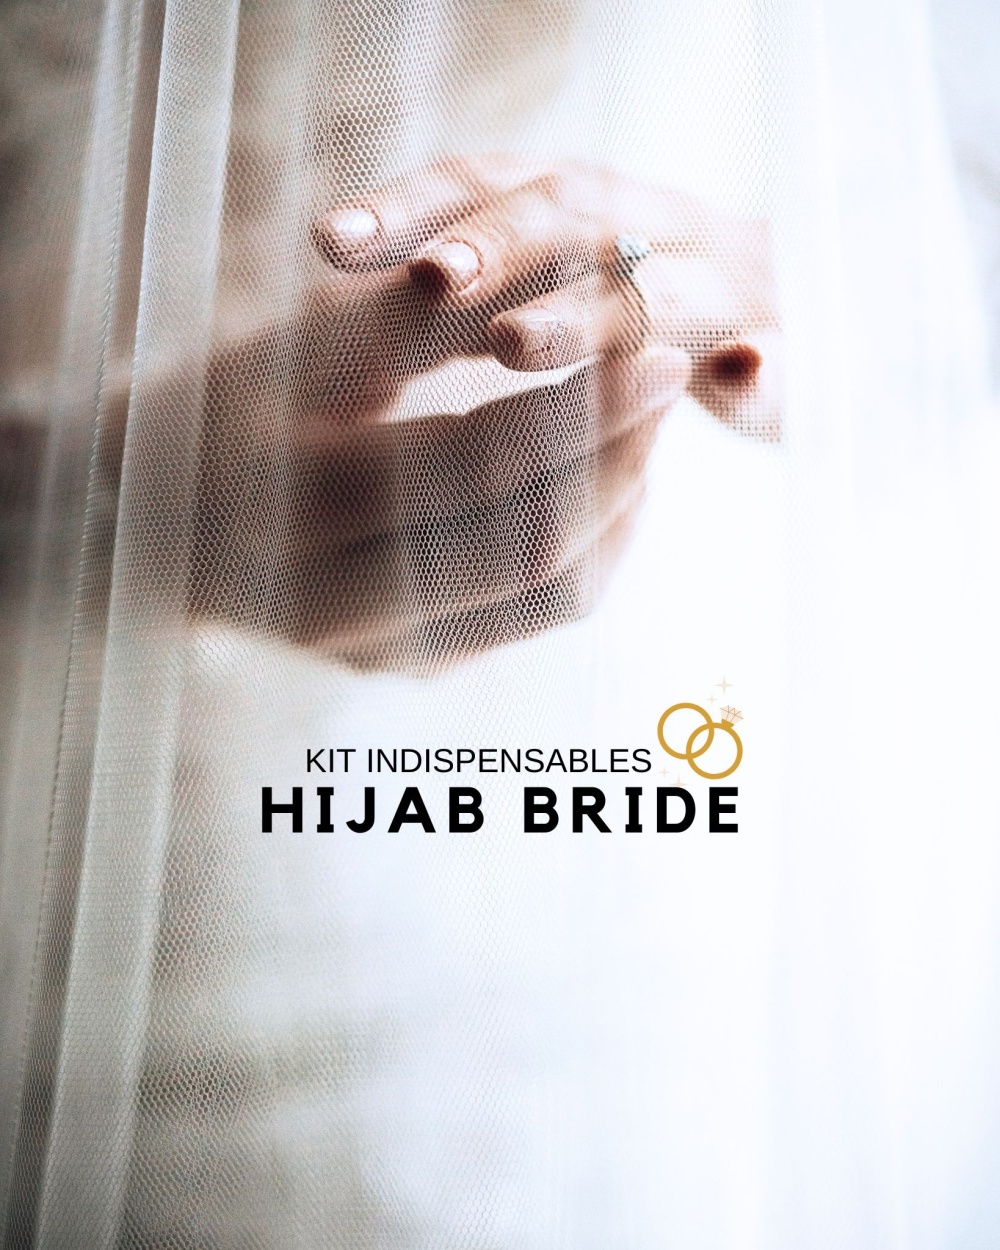 Kit de Mariée Voilée - Toutes les Indispensables pour une Pose de Hijab Belle et Pudique le Jour J